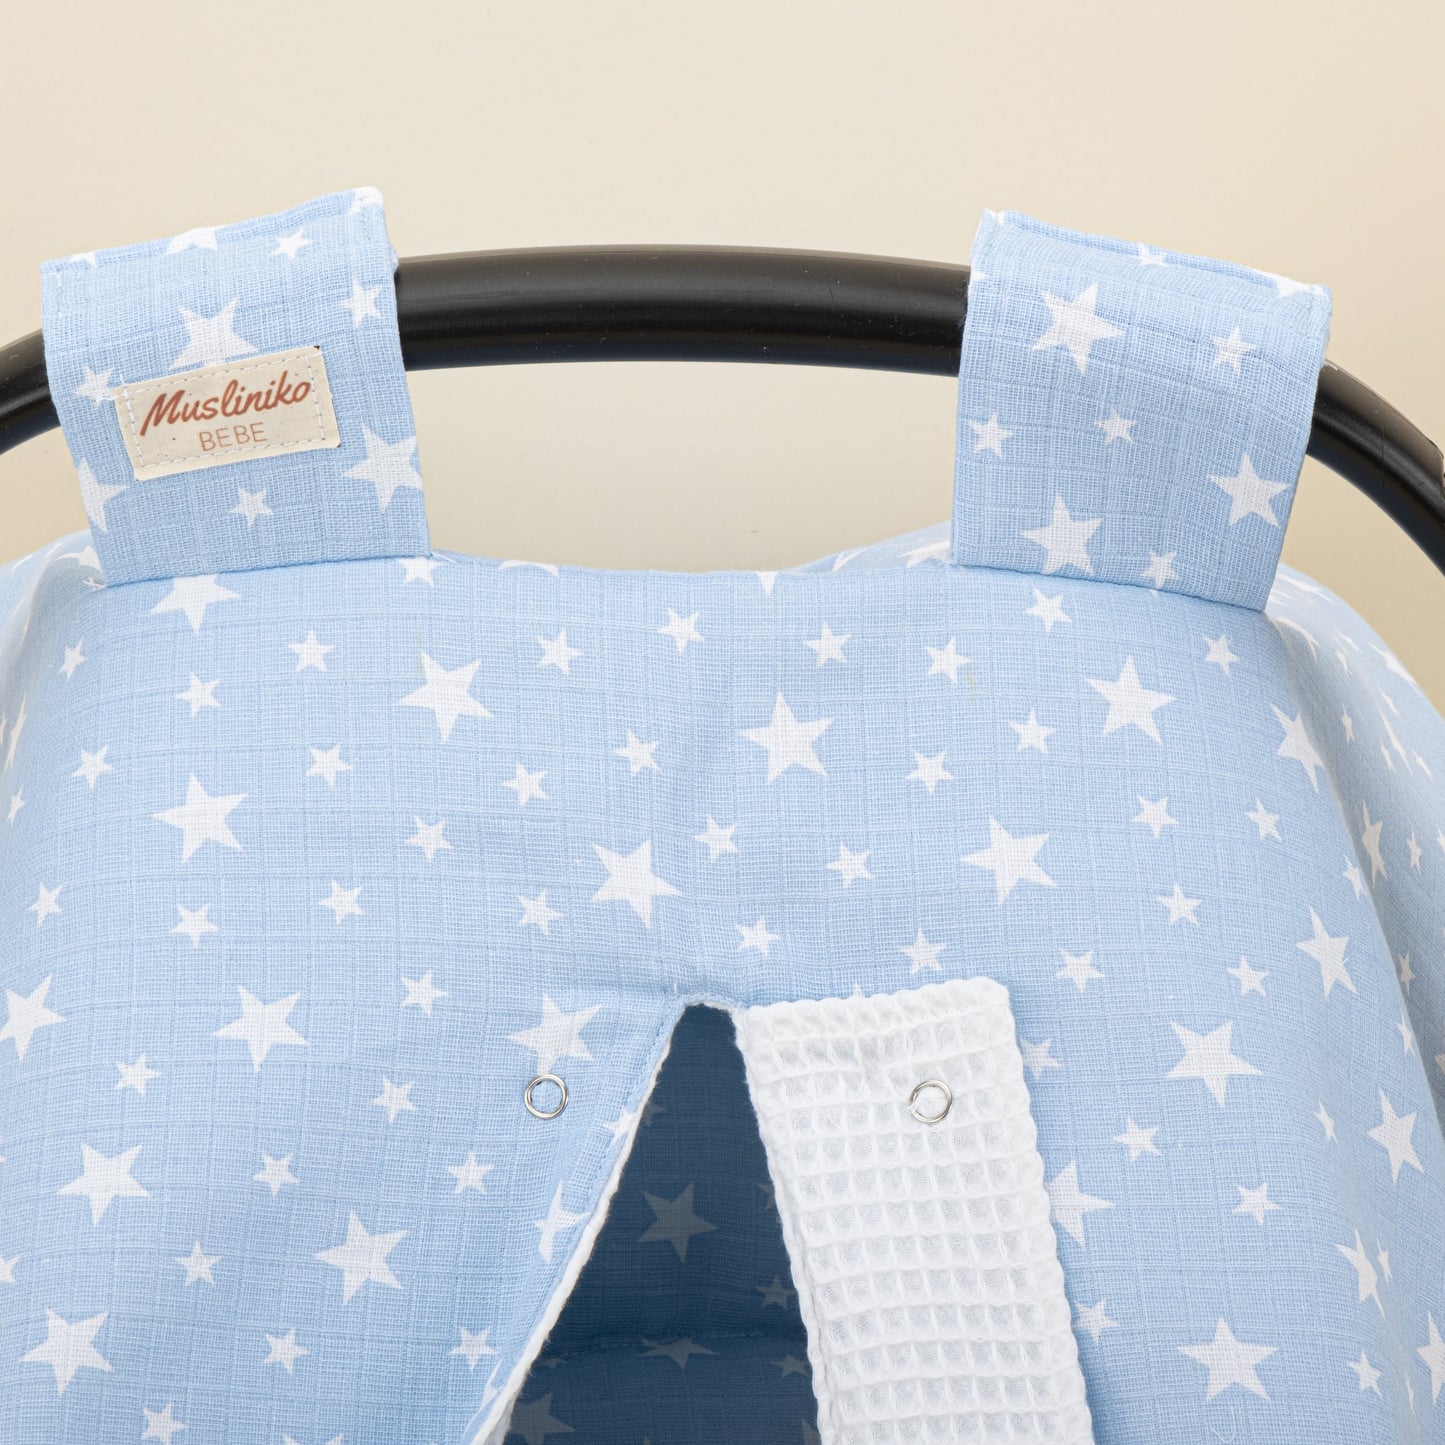 Stroller Cover Set - Double Side - White Honeycomb - Blue Little Stars